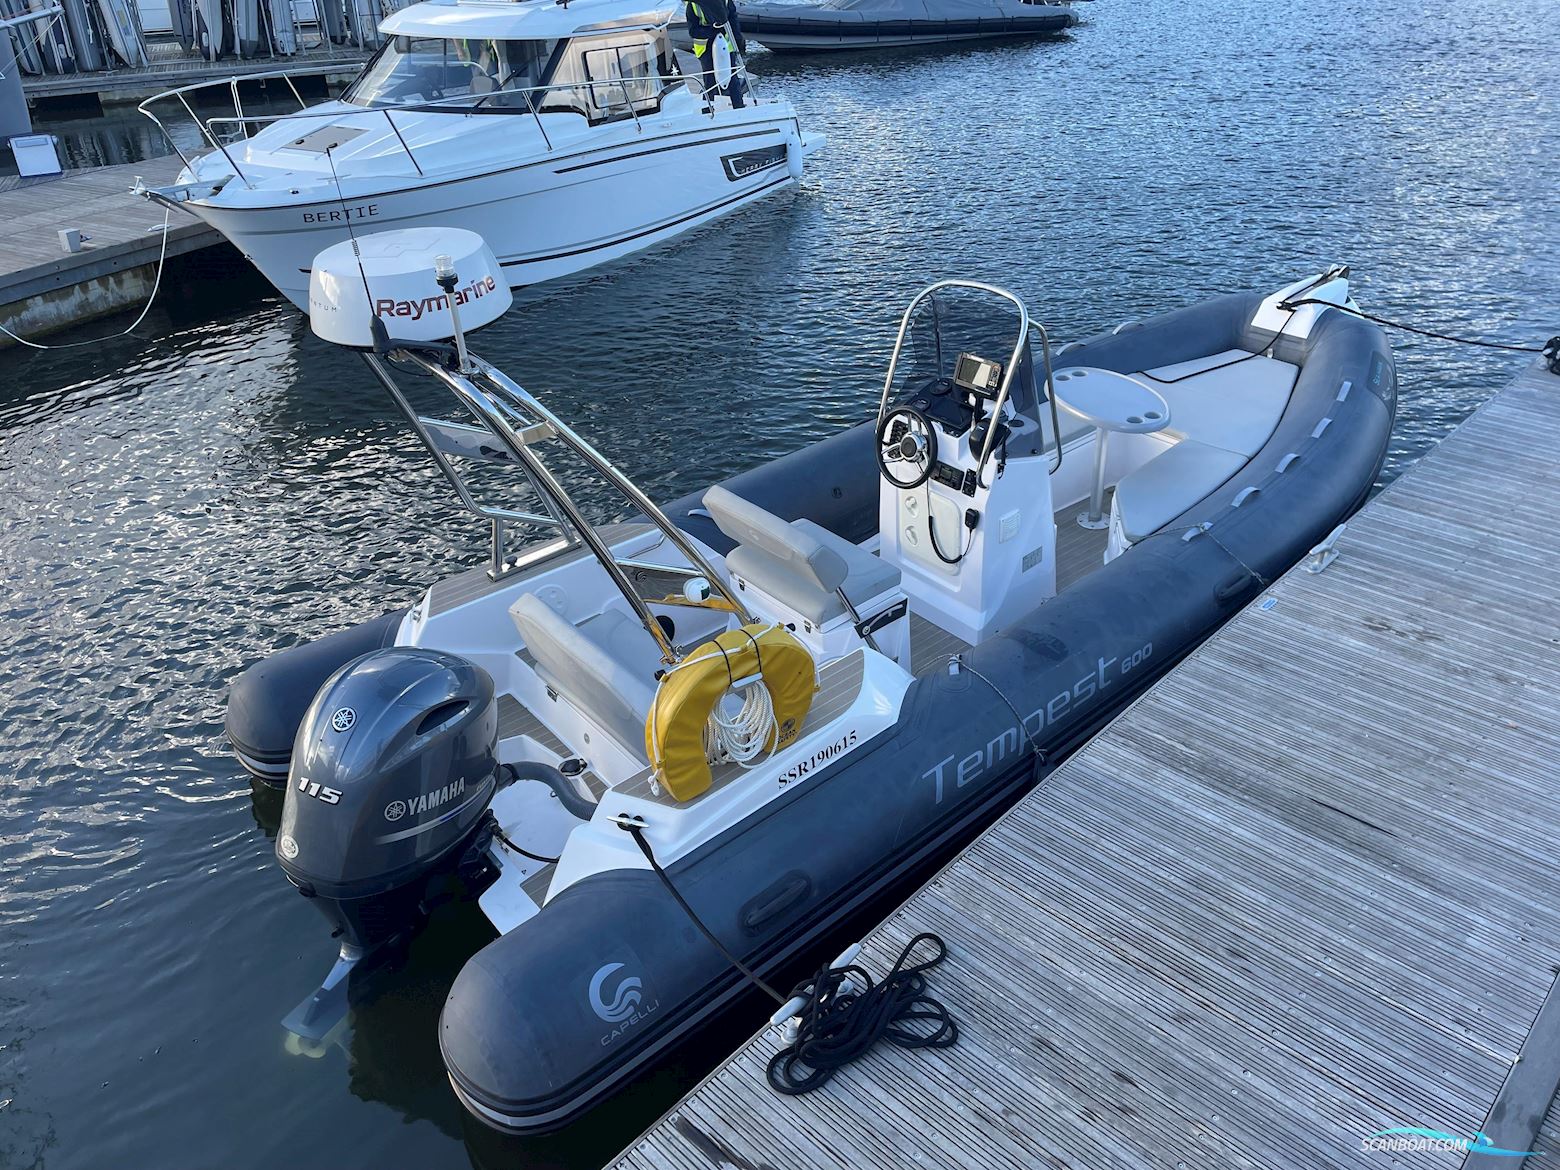 Capelli Tempest 600 Motor boat 2019, with Yamaha engine, United Kingdom